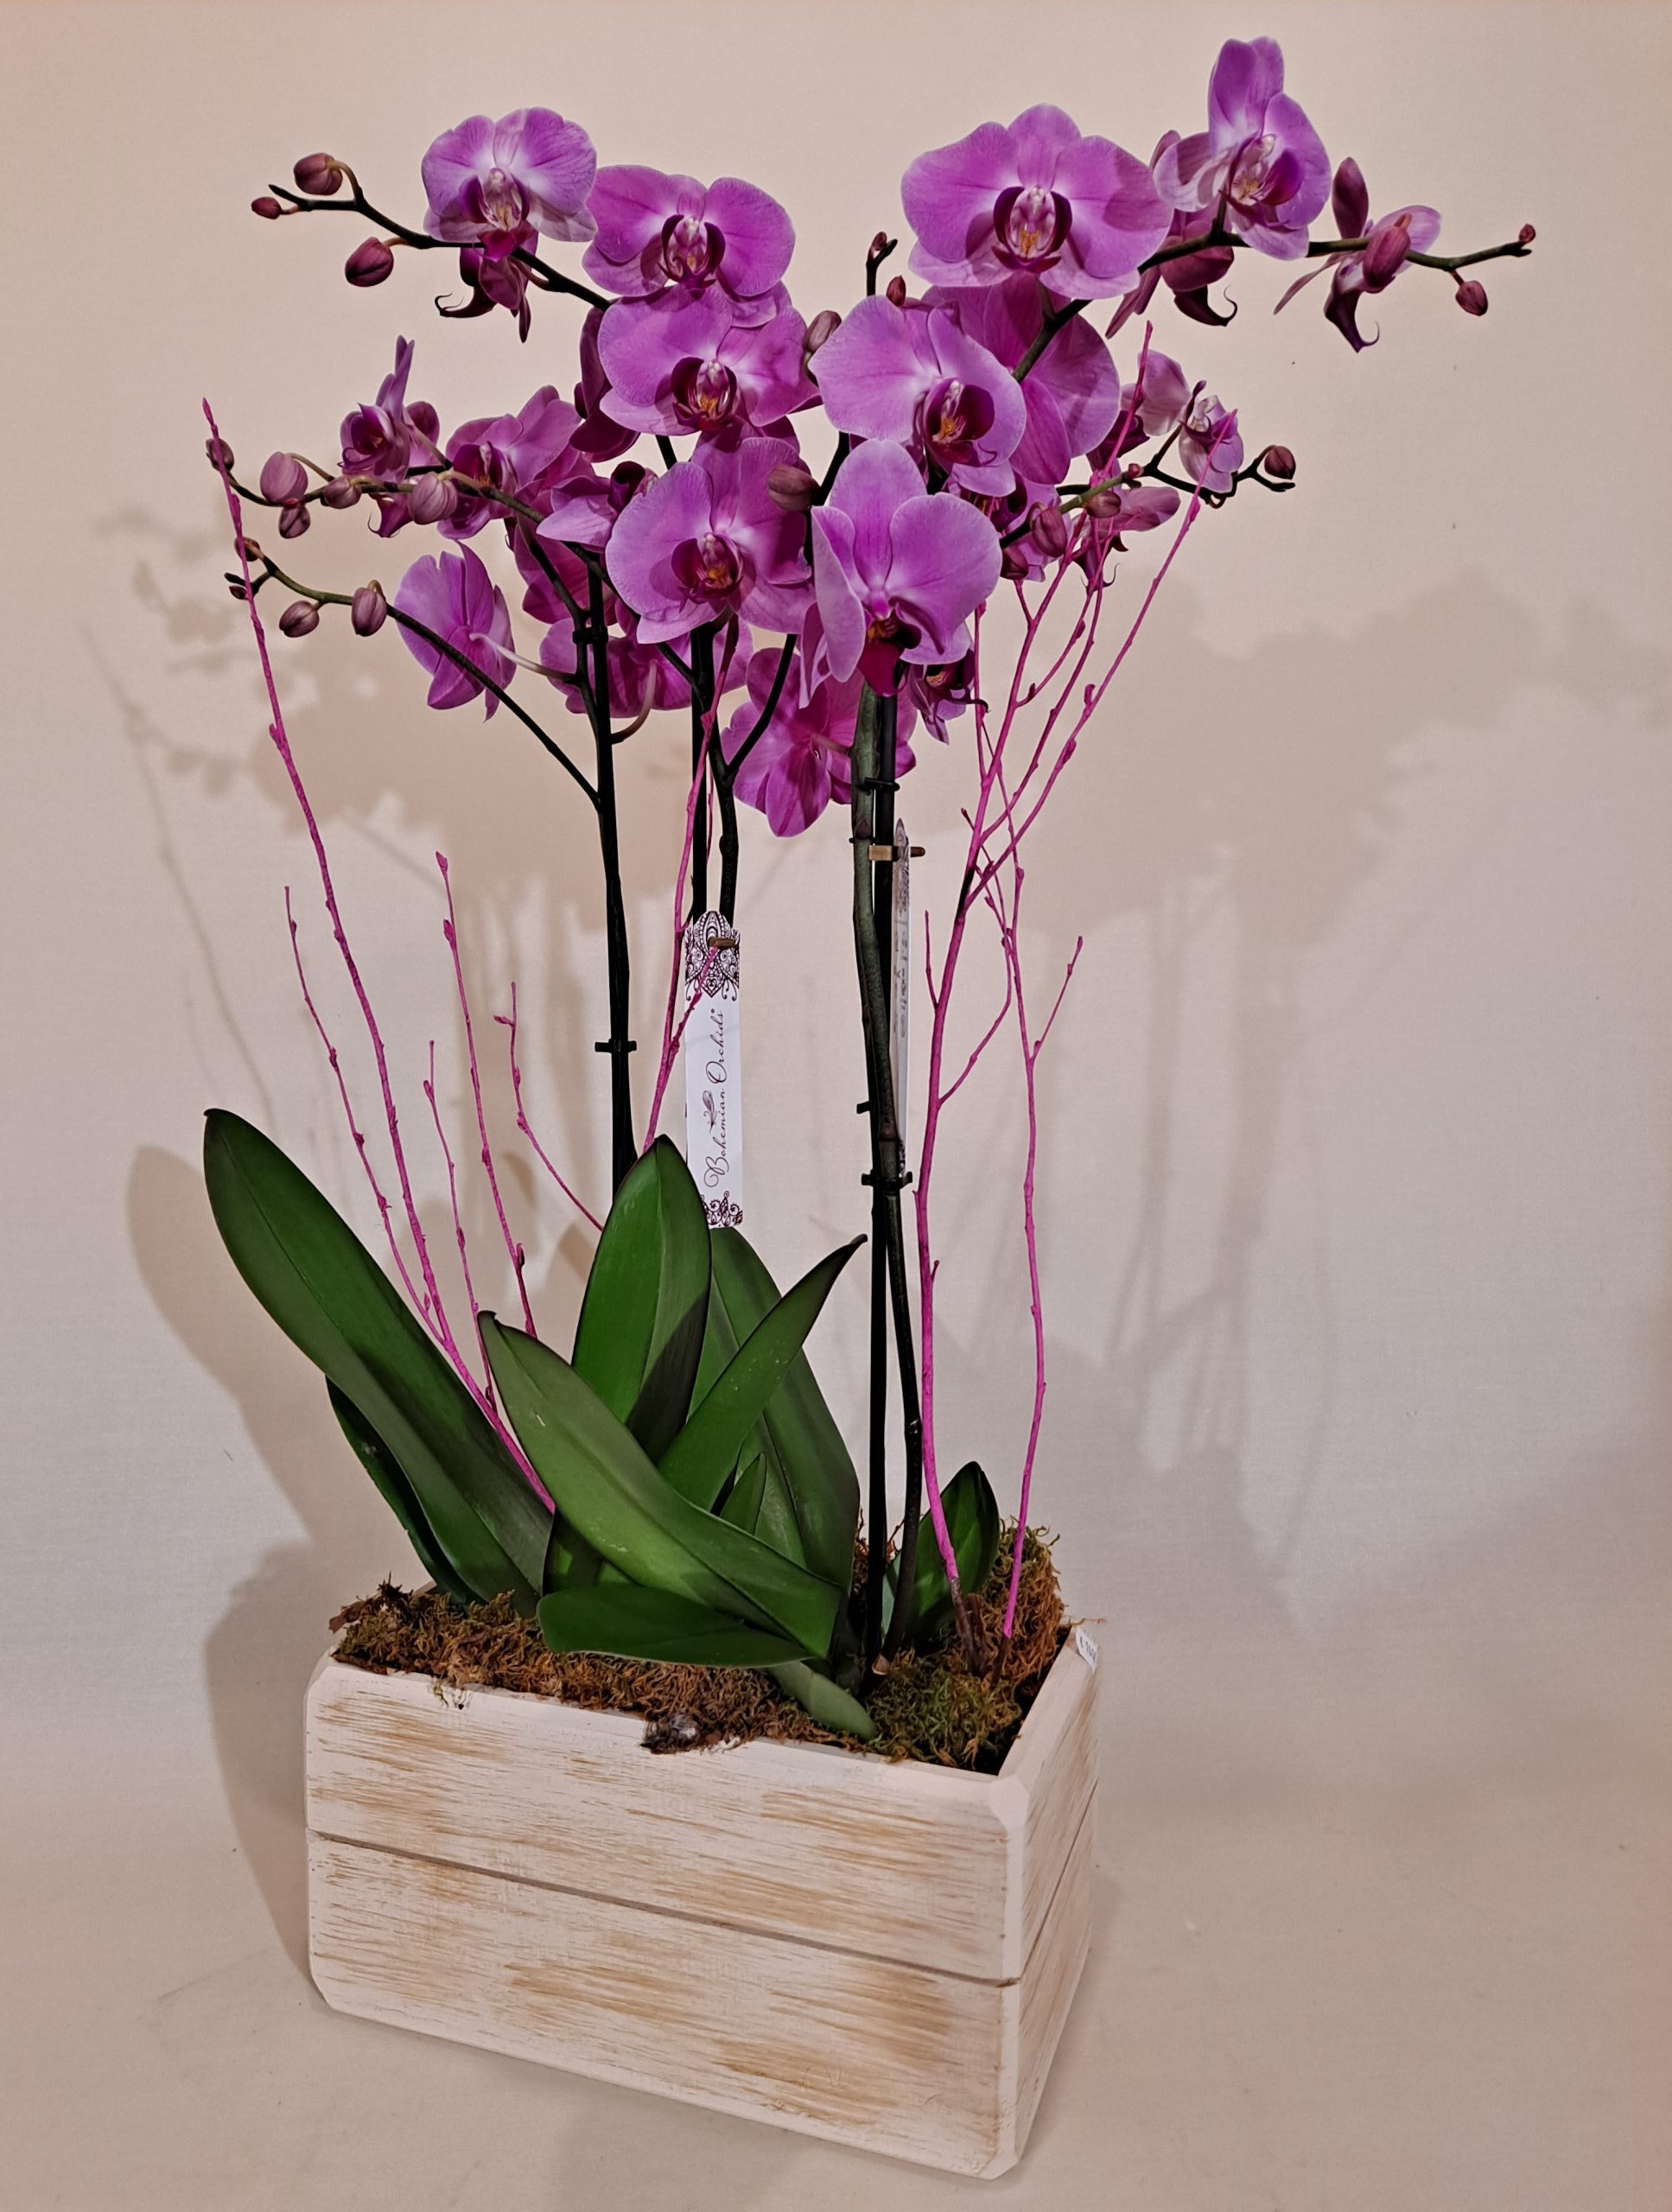 Centro con orquídeas naturales